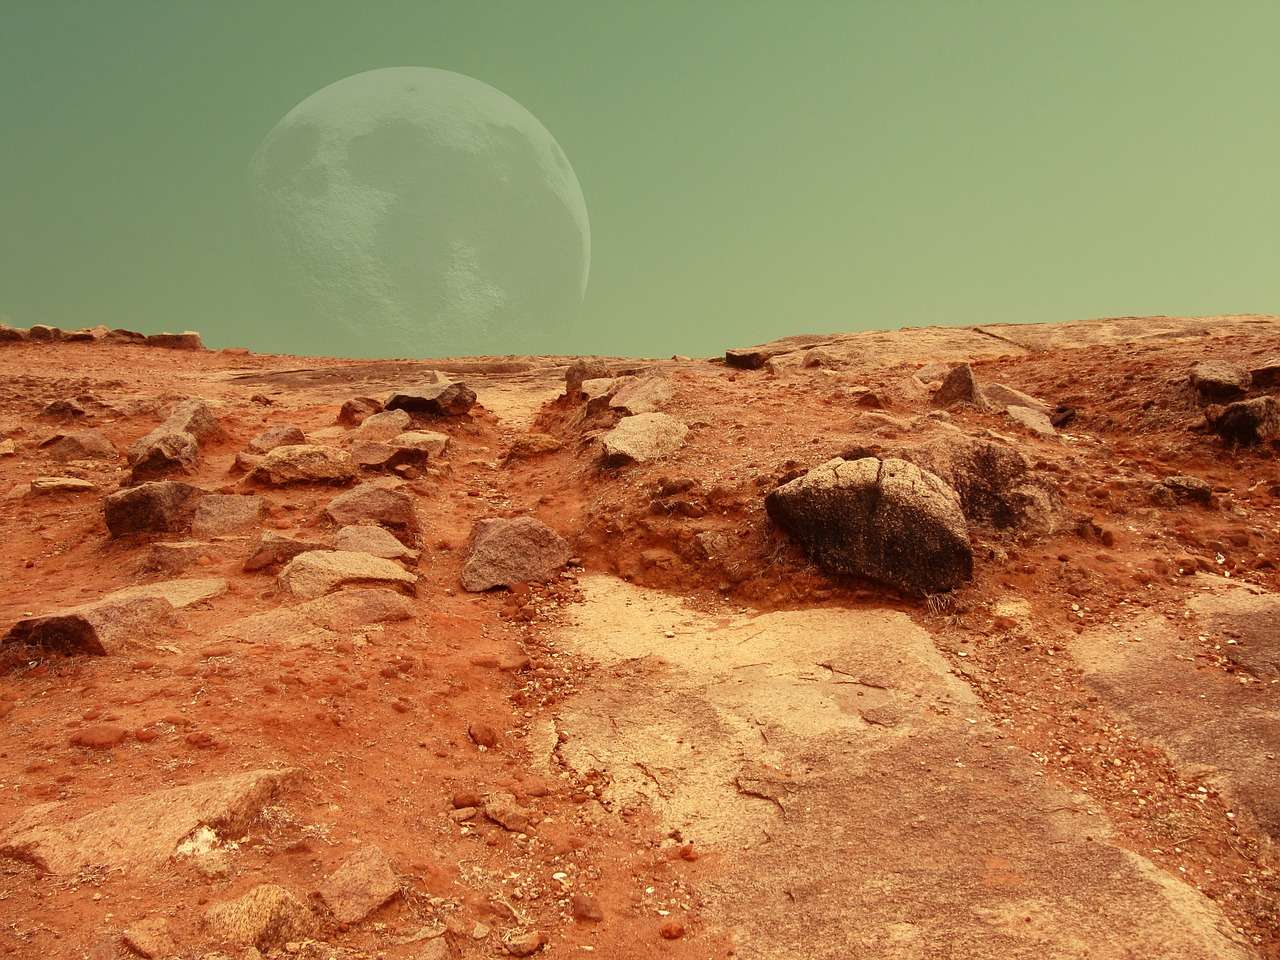 Marte | Curiosity scava ancora e trova tracce di carbonio marziano - curiosauro.it -02022022